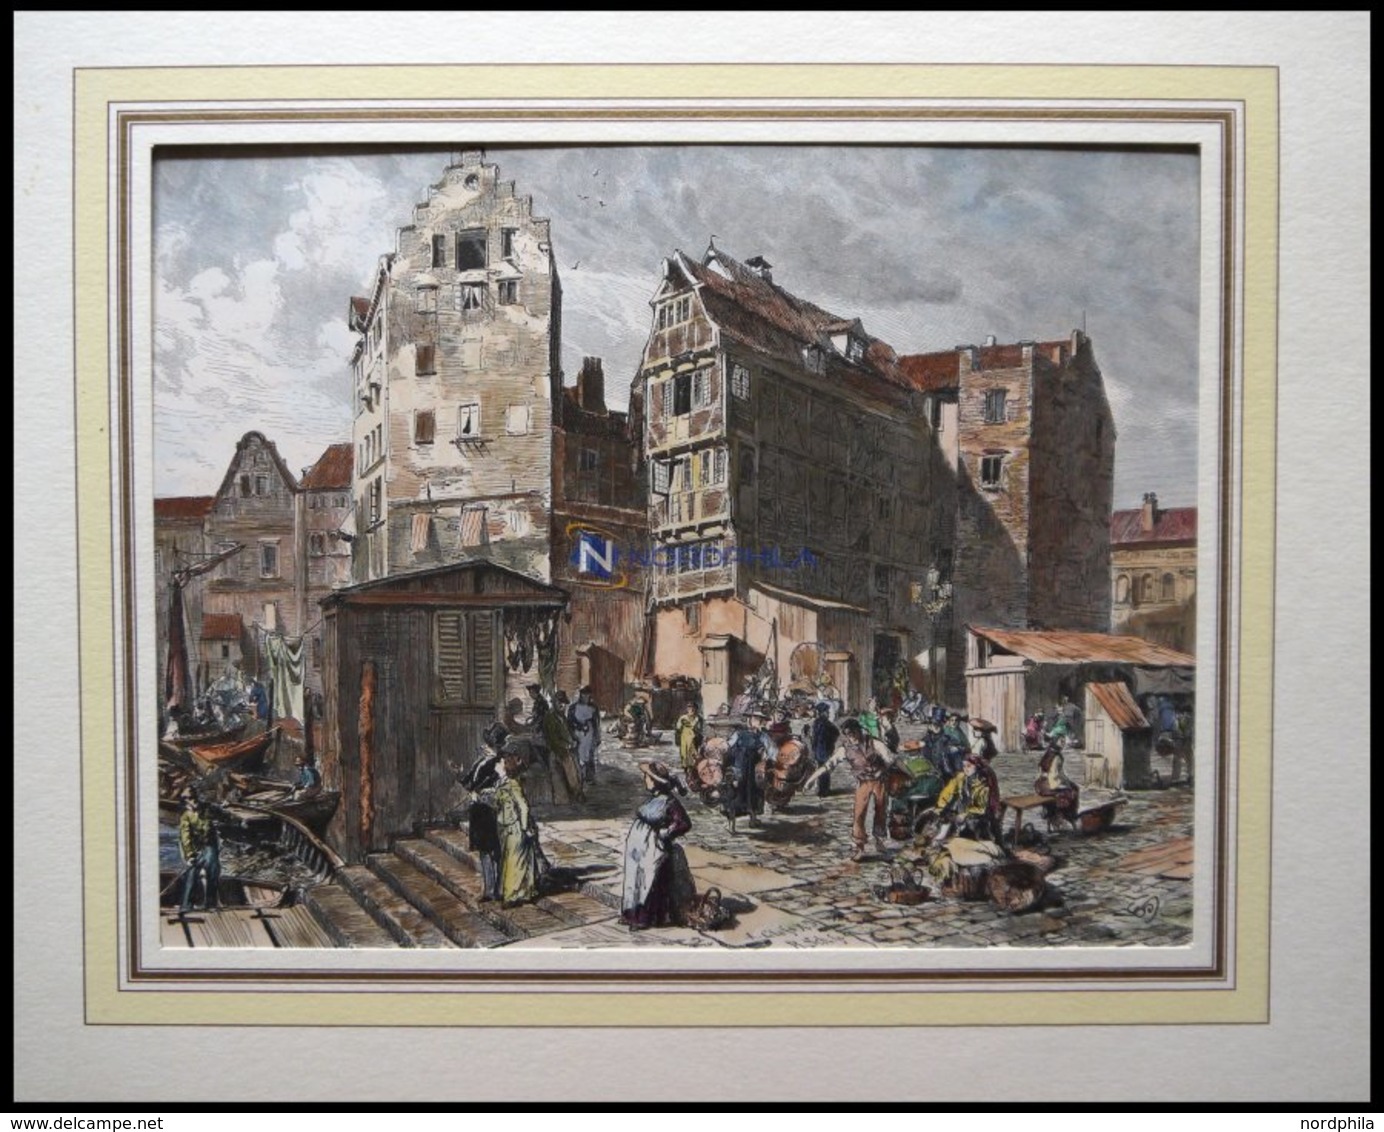 HAMBURG-ALTONA: Markt In Altona, Kol. Holzstich Um 1880 - Litografía